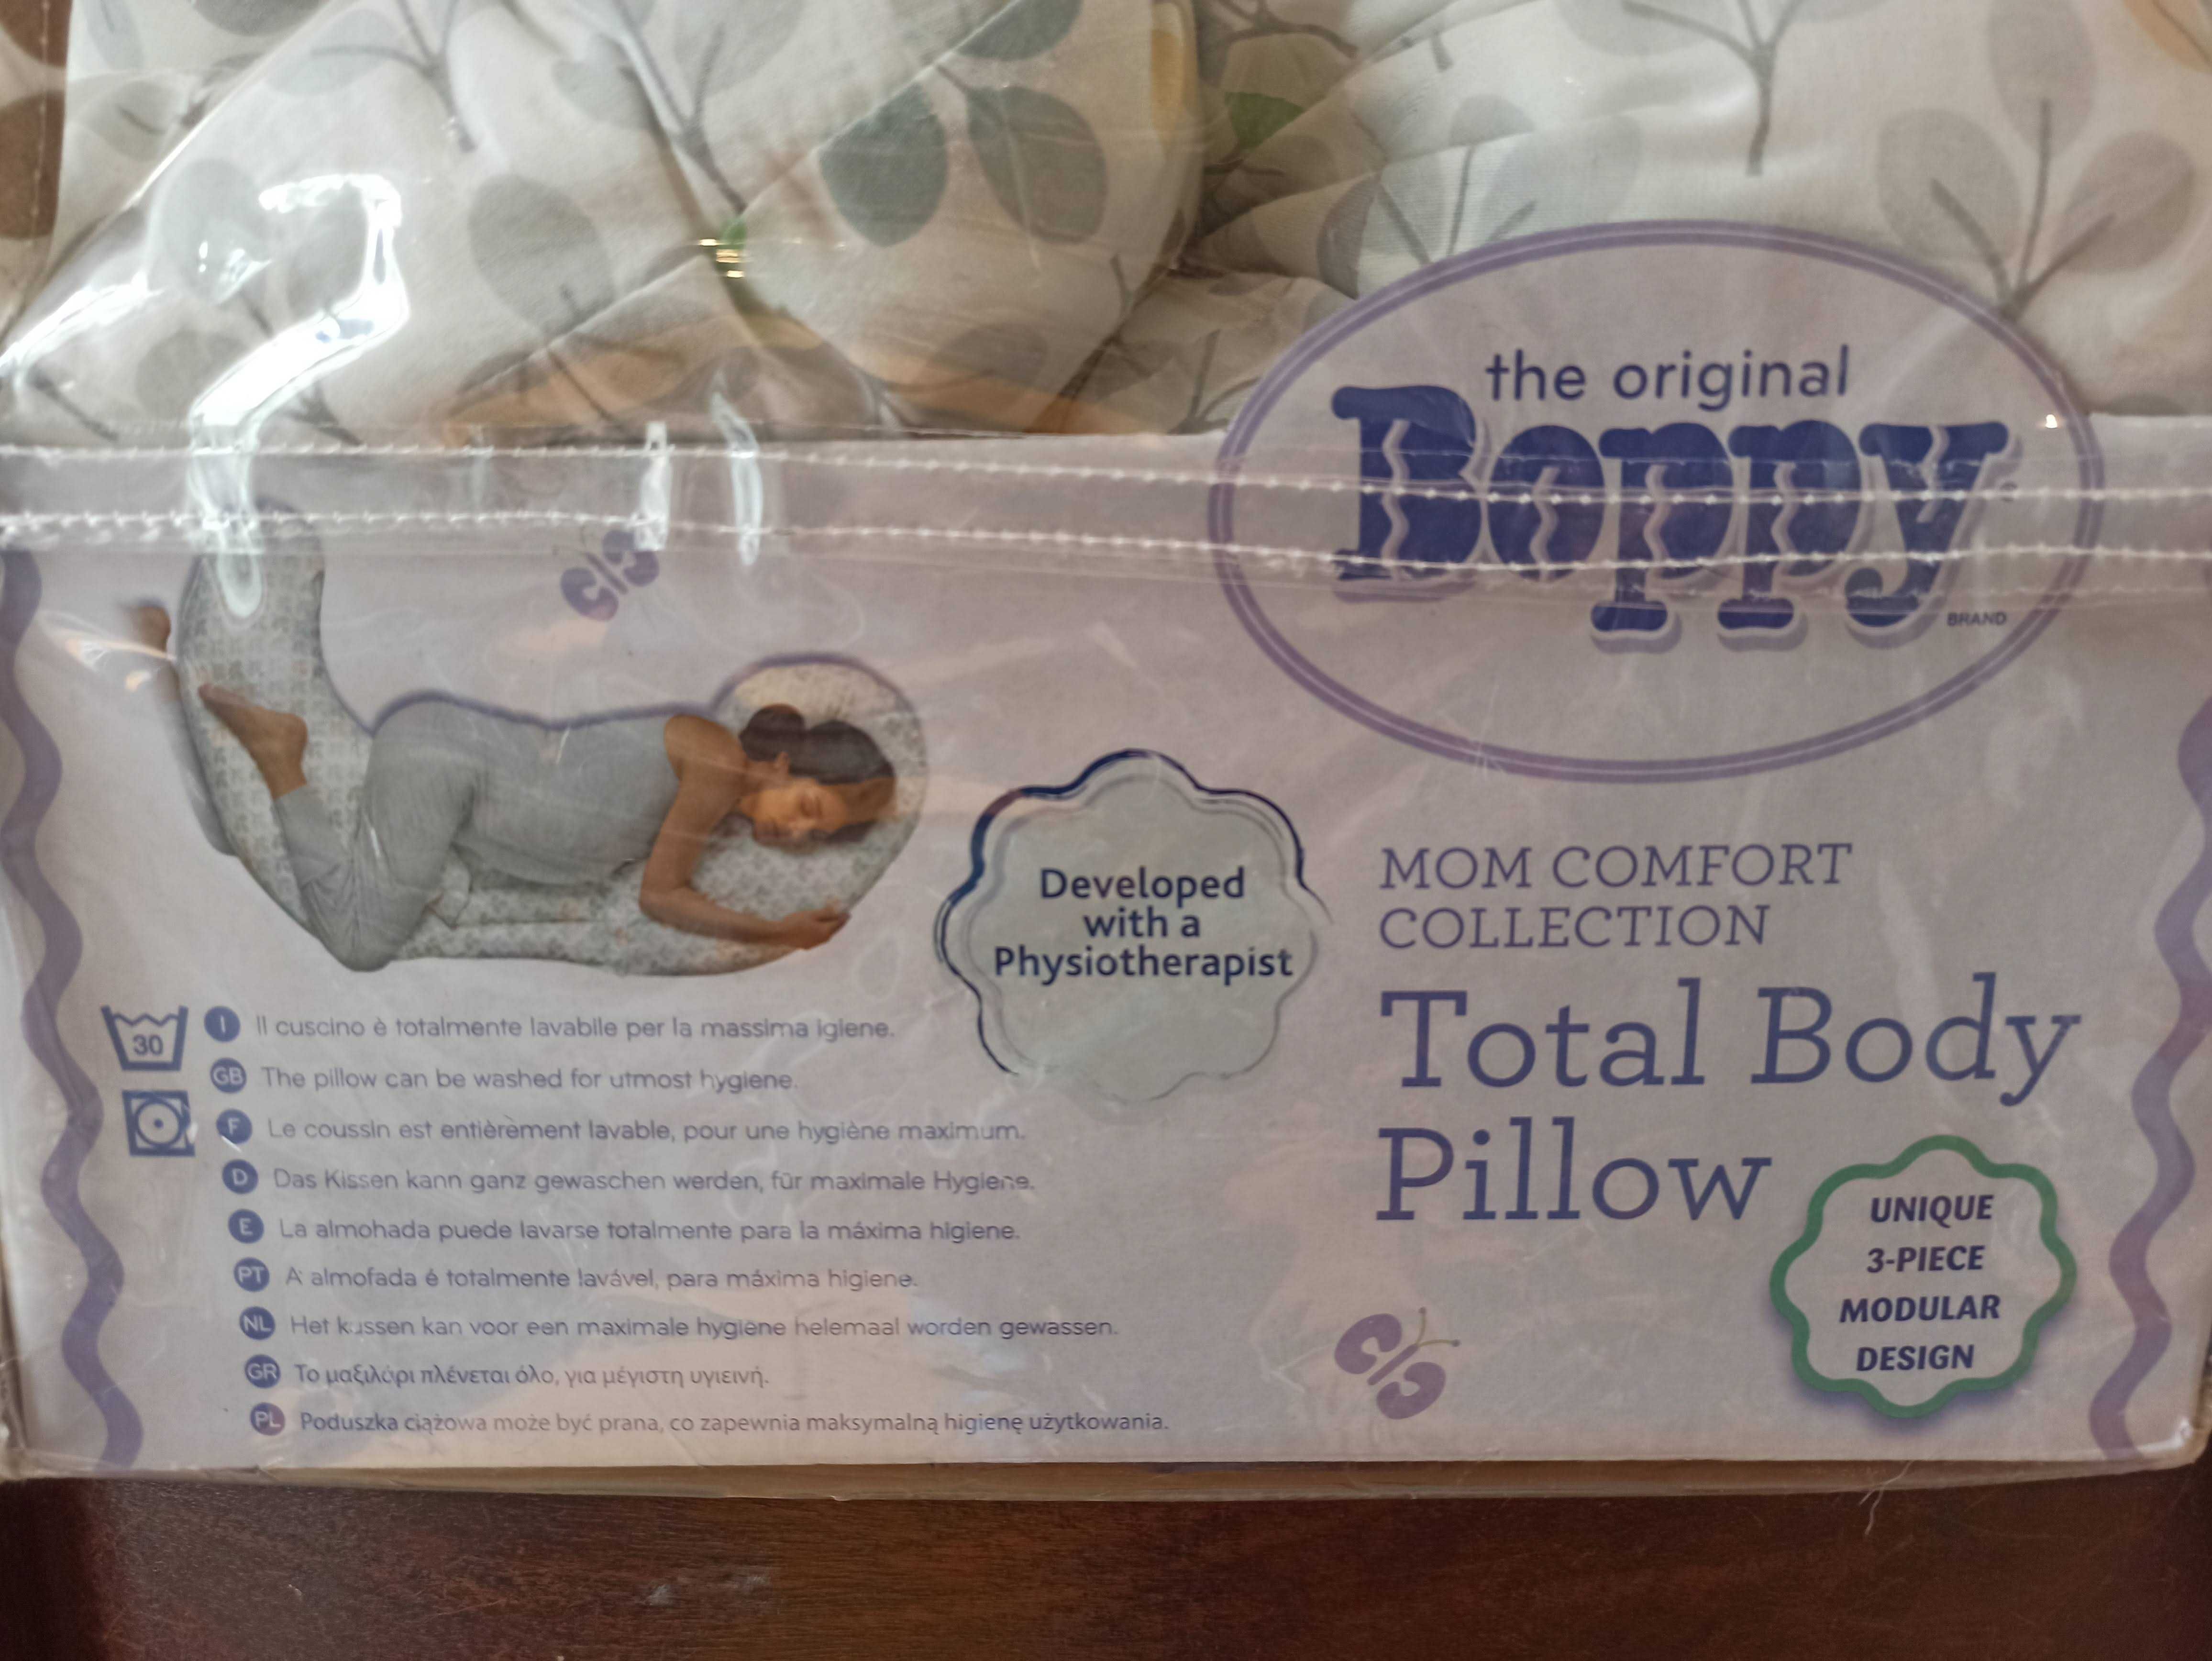 Almofada de Gravidez Boppy Total Body – Chicco